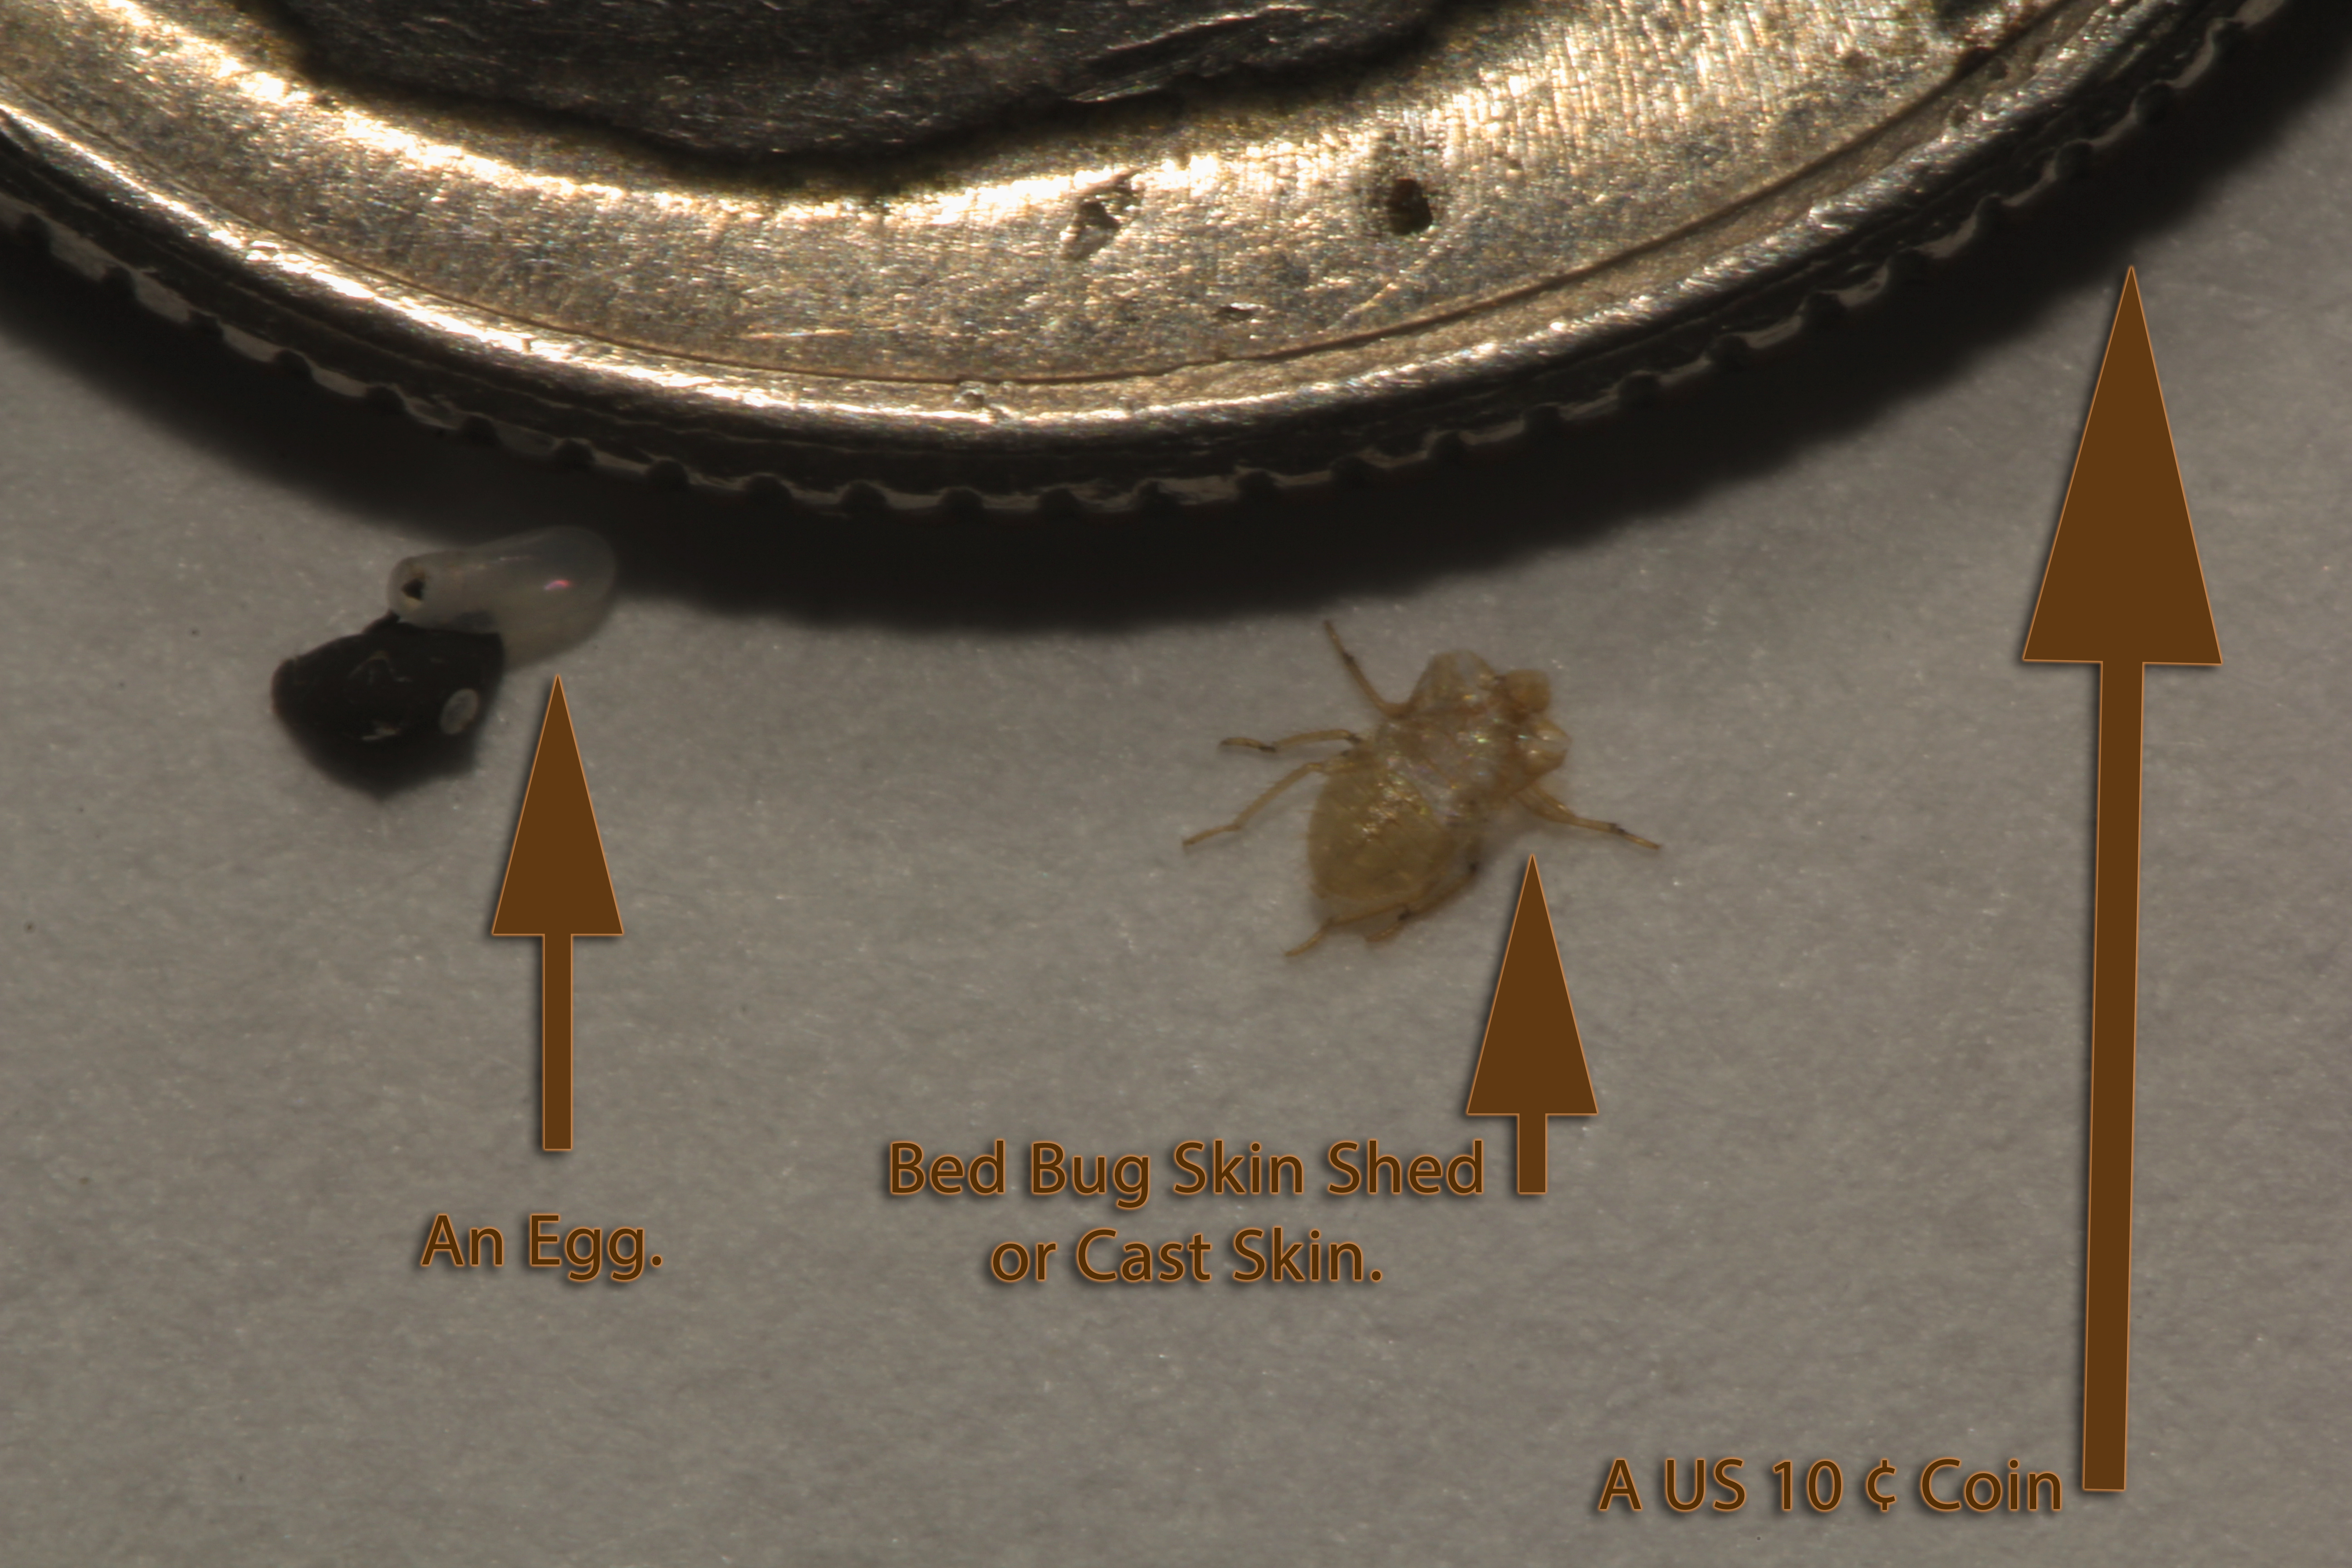 Spider Eggs Under Skin A bedbug skin cast or shed